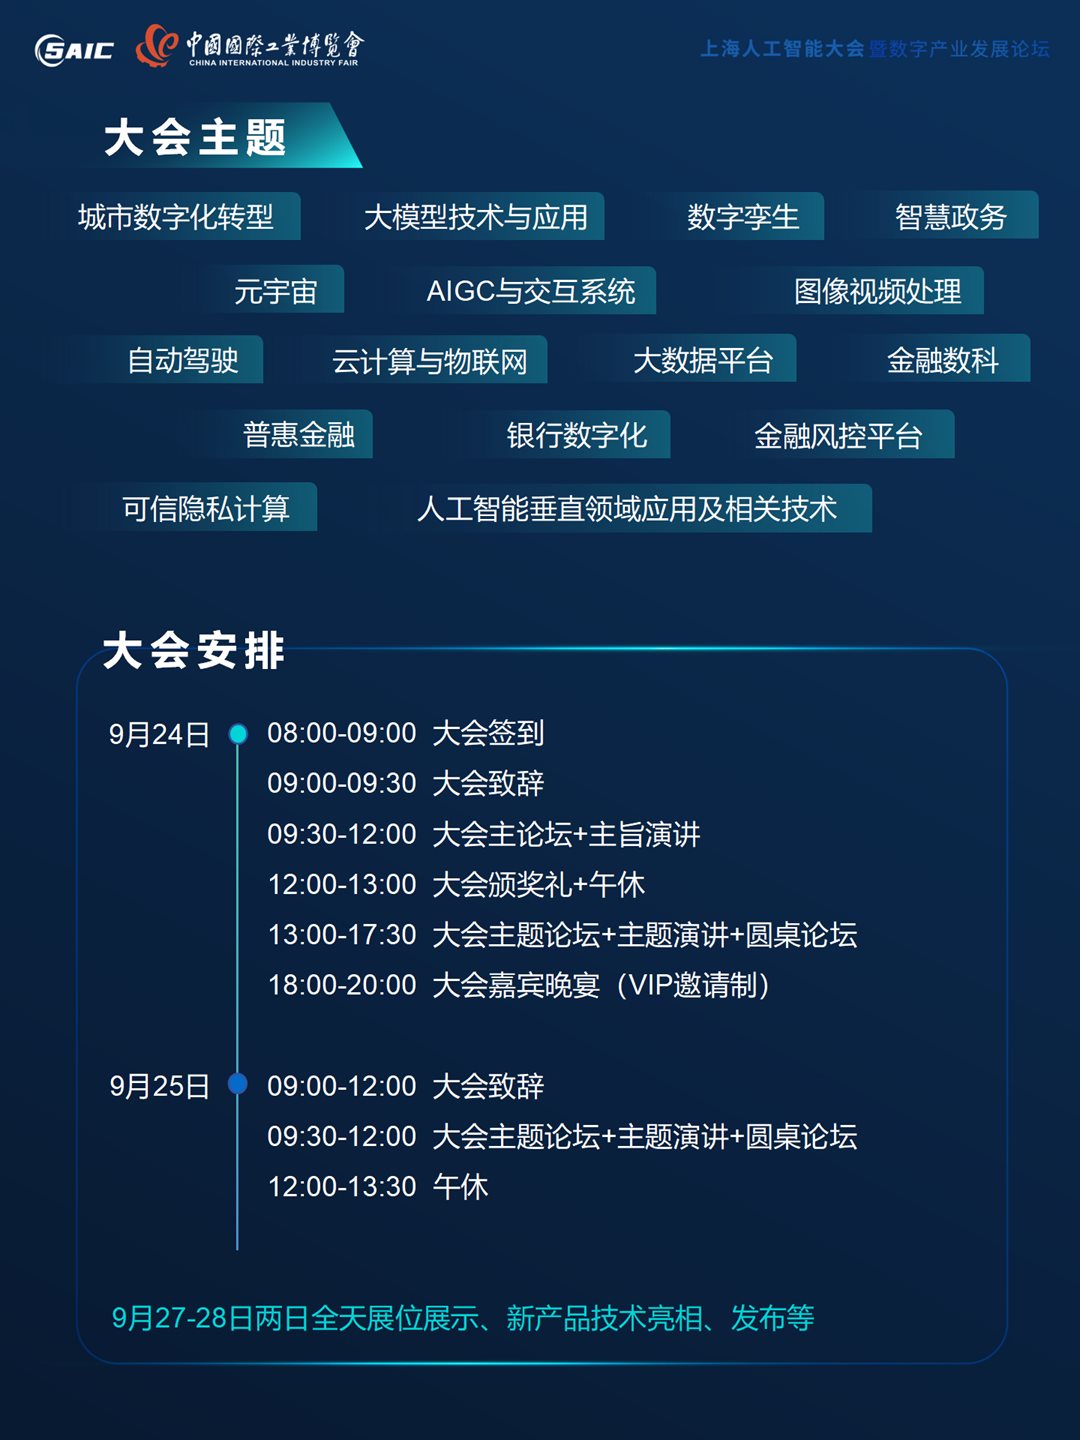 8th上海AI大会 大会合作方案 0517（对外）_03.png